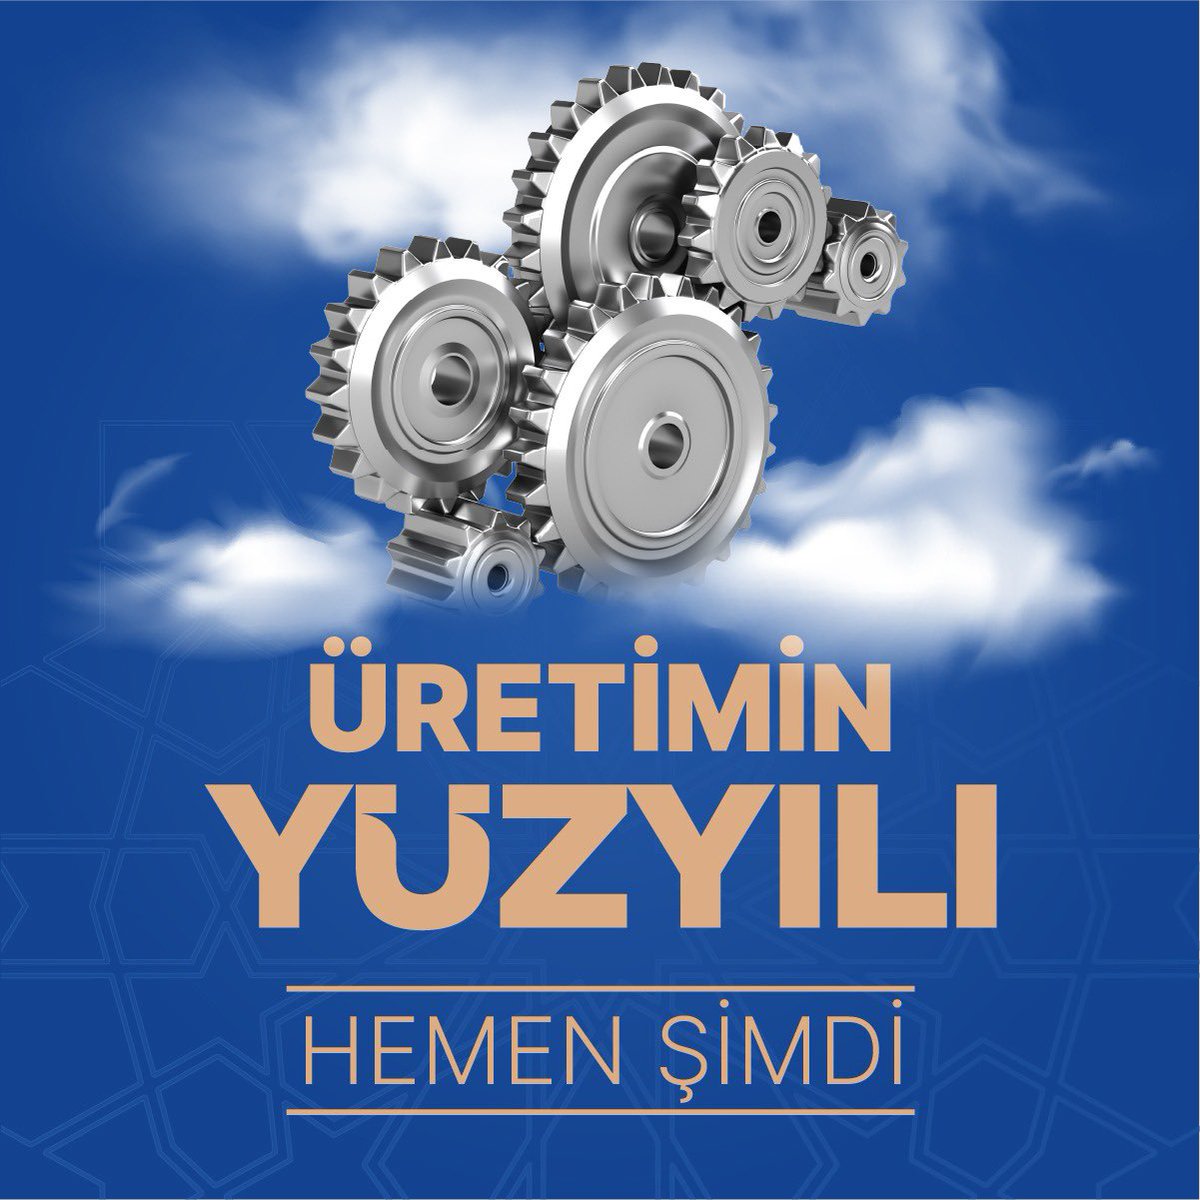 Üretimin yüzyılı hemen şimdi… Türkiye Yüzyılı…